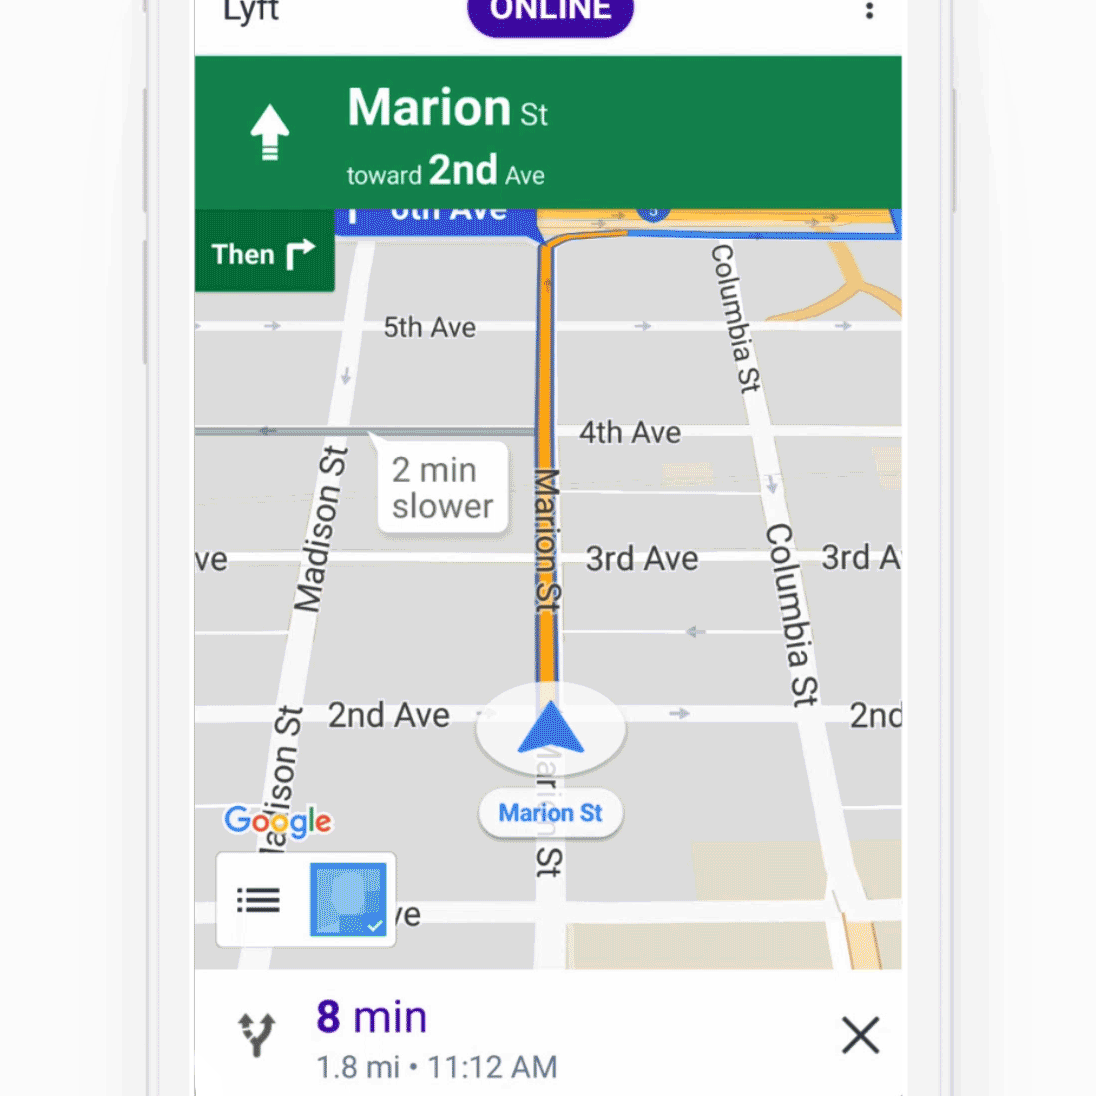 Lyft’s in-app navigation	